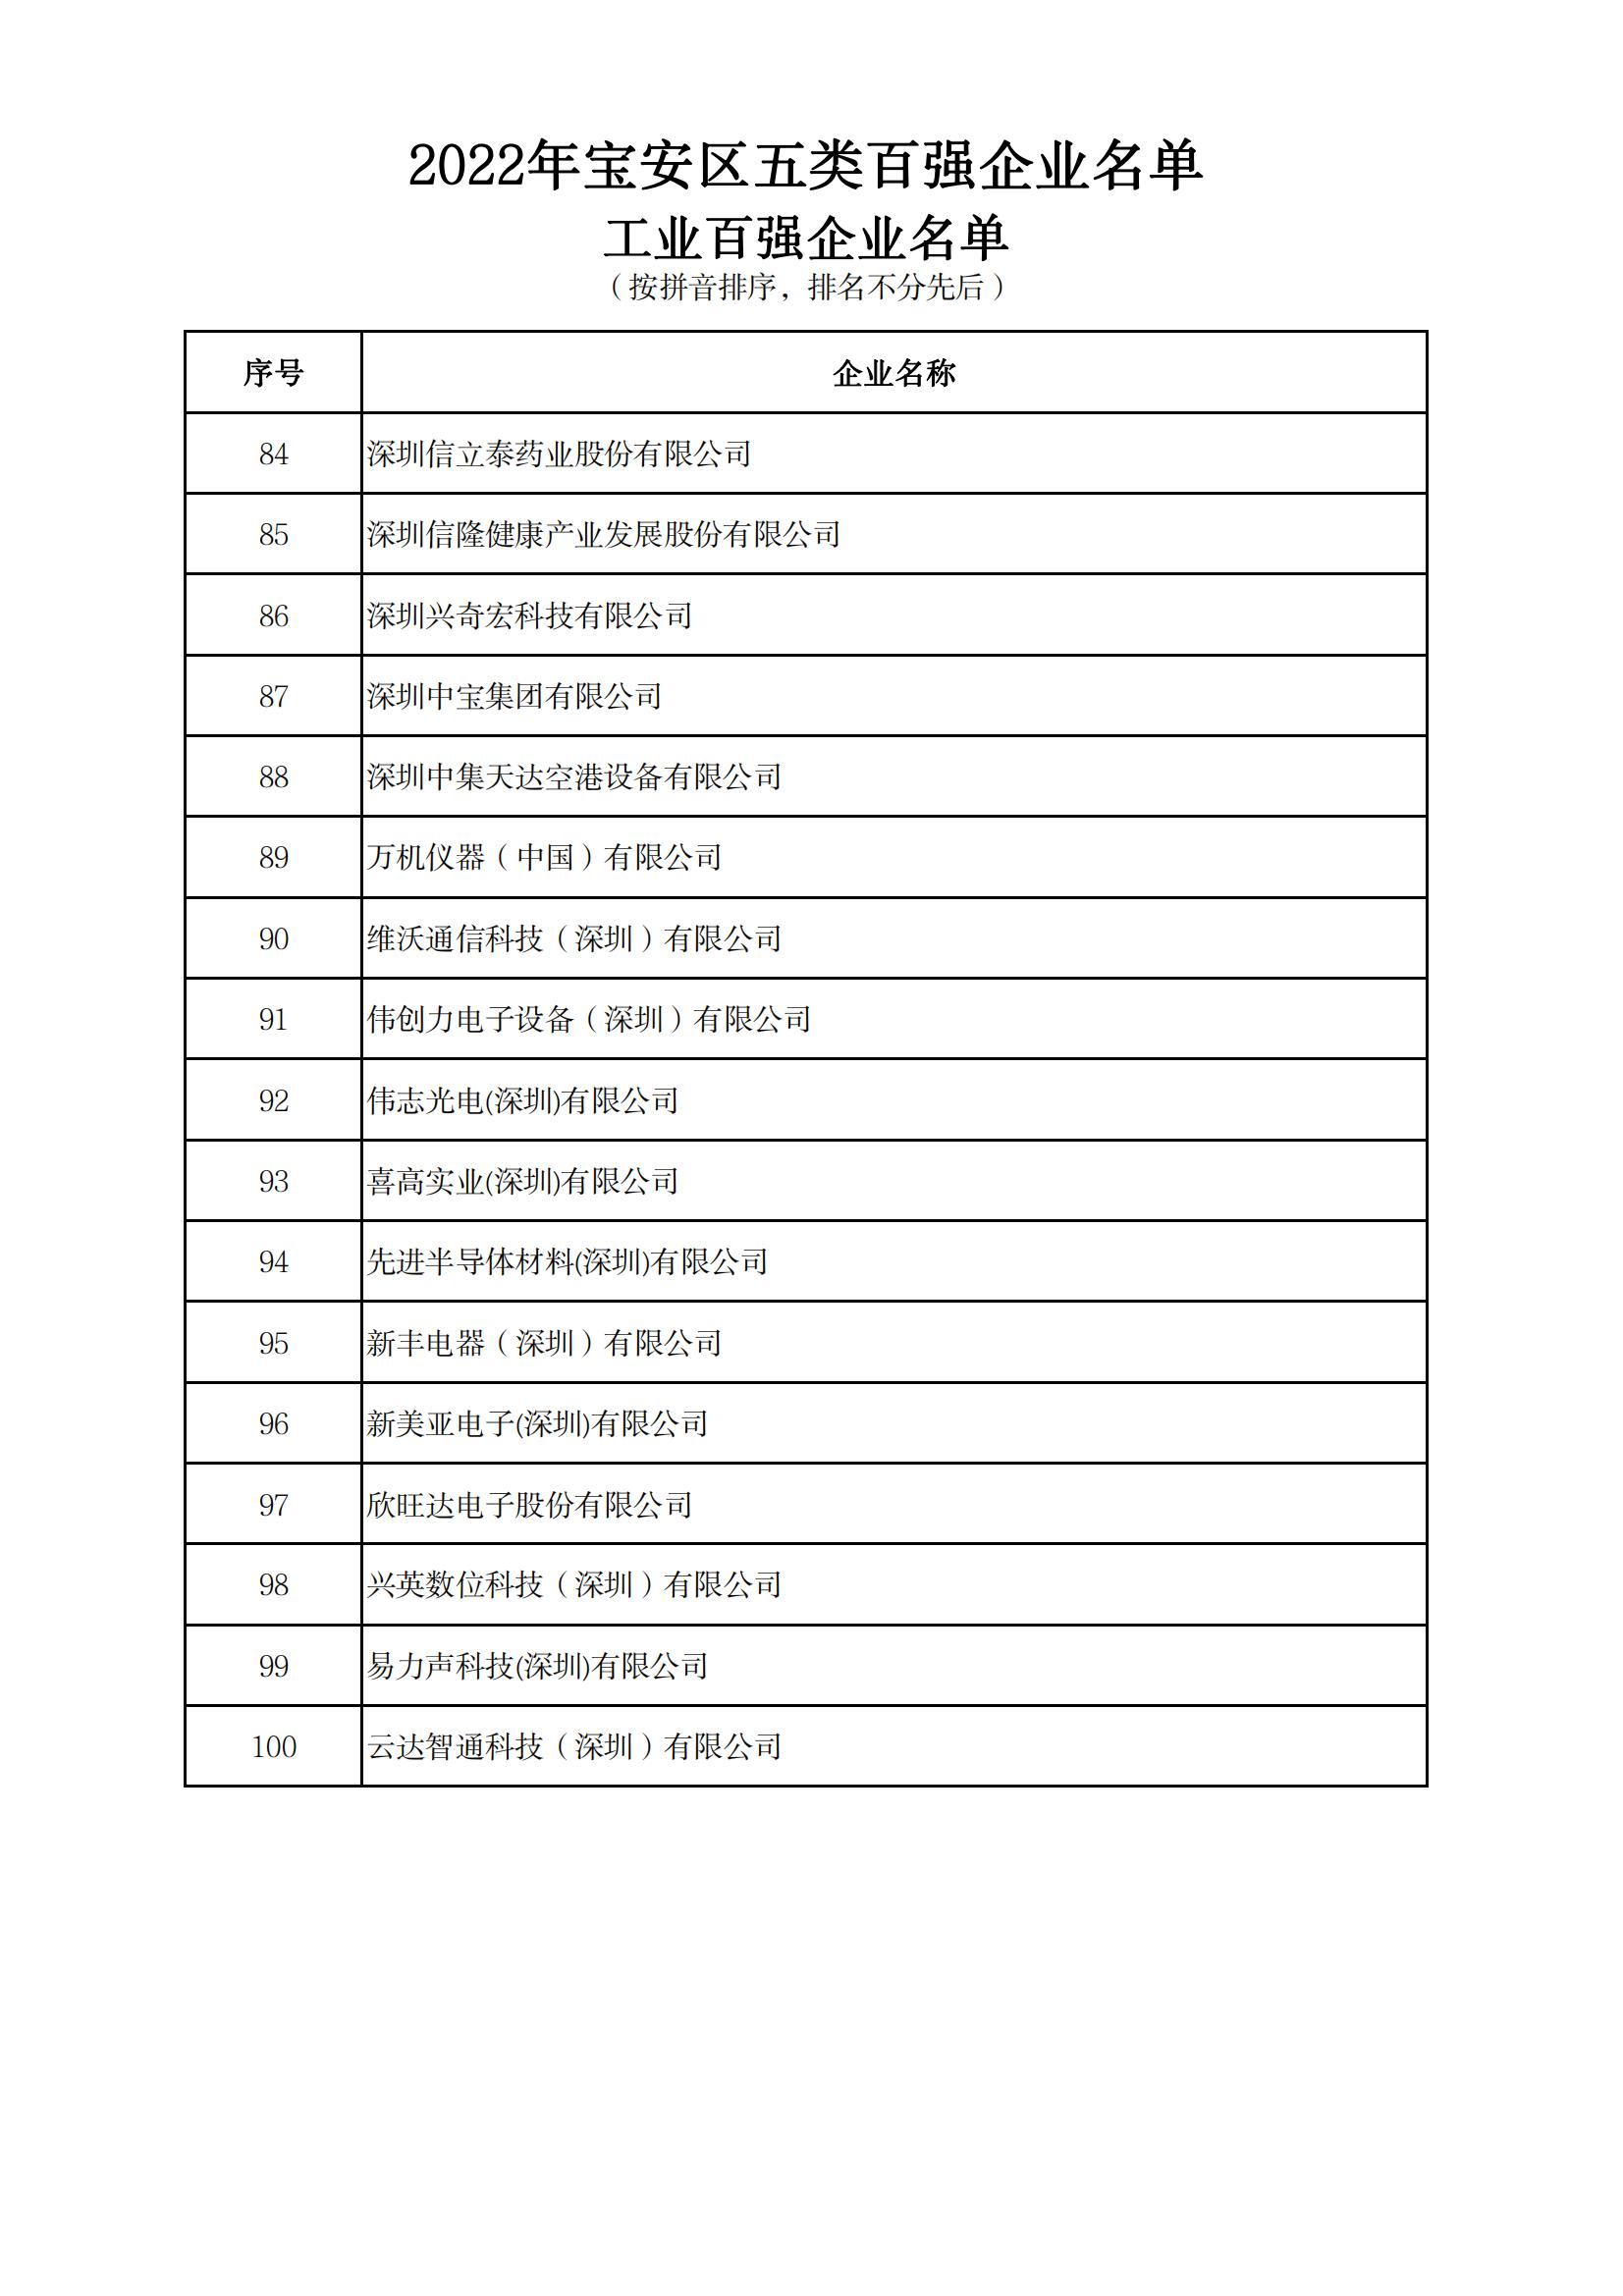 附件：2022年宝安区五类百强企业名单_04.jpg